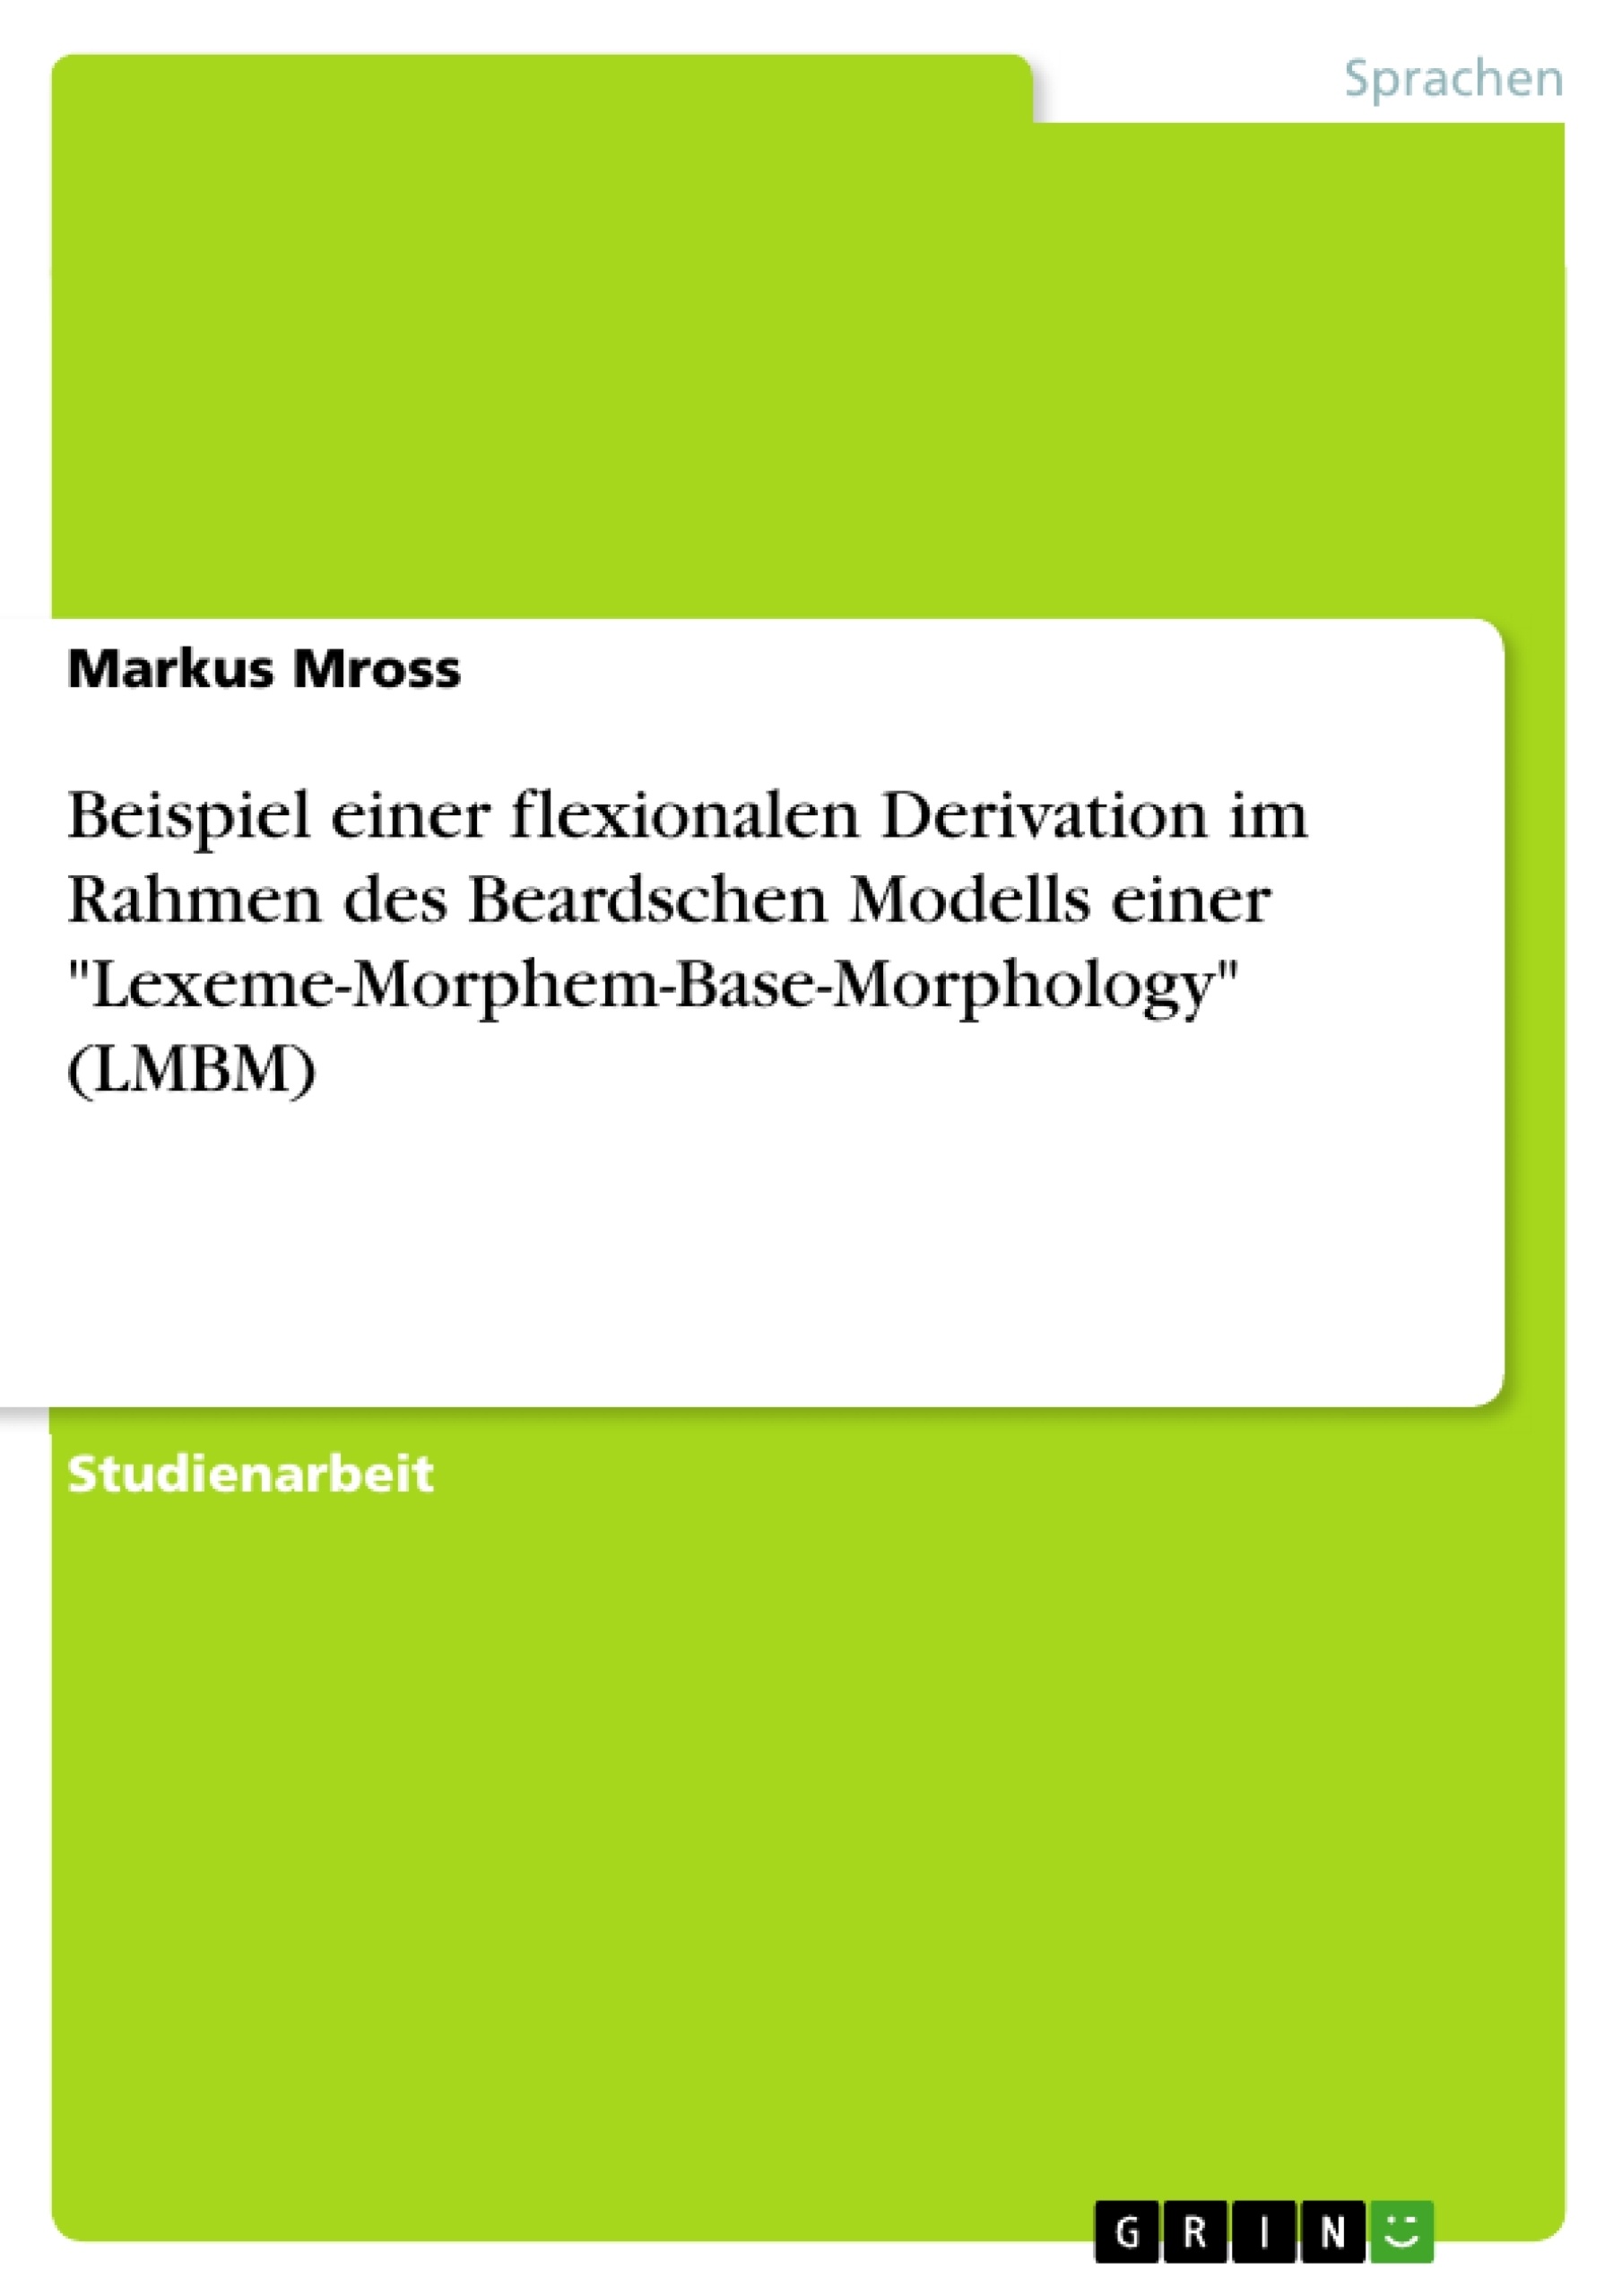 Titel: Beispiel einer flexionalen Derivation im Rahmen des Beardschen Modells einer "Lexeme-Morphem-Base-Morphology" (LMBM)